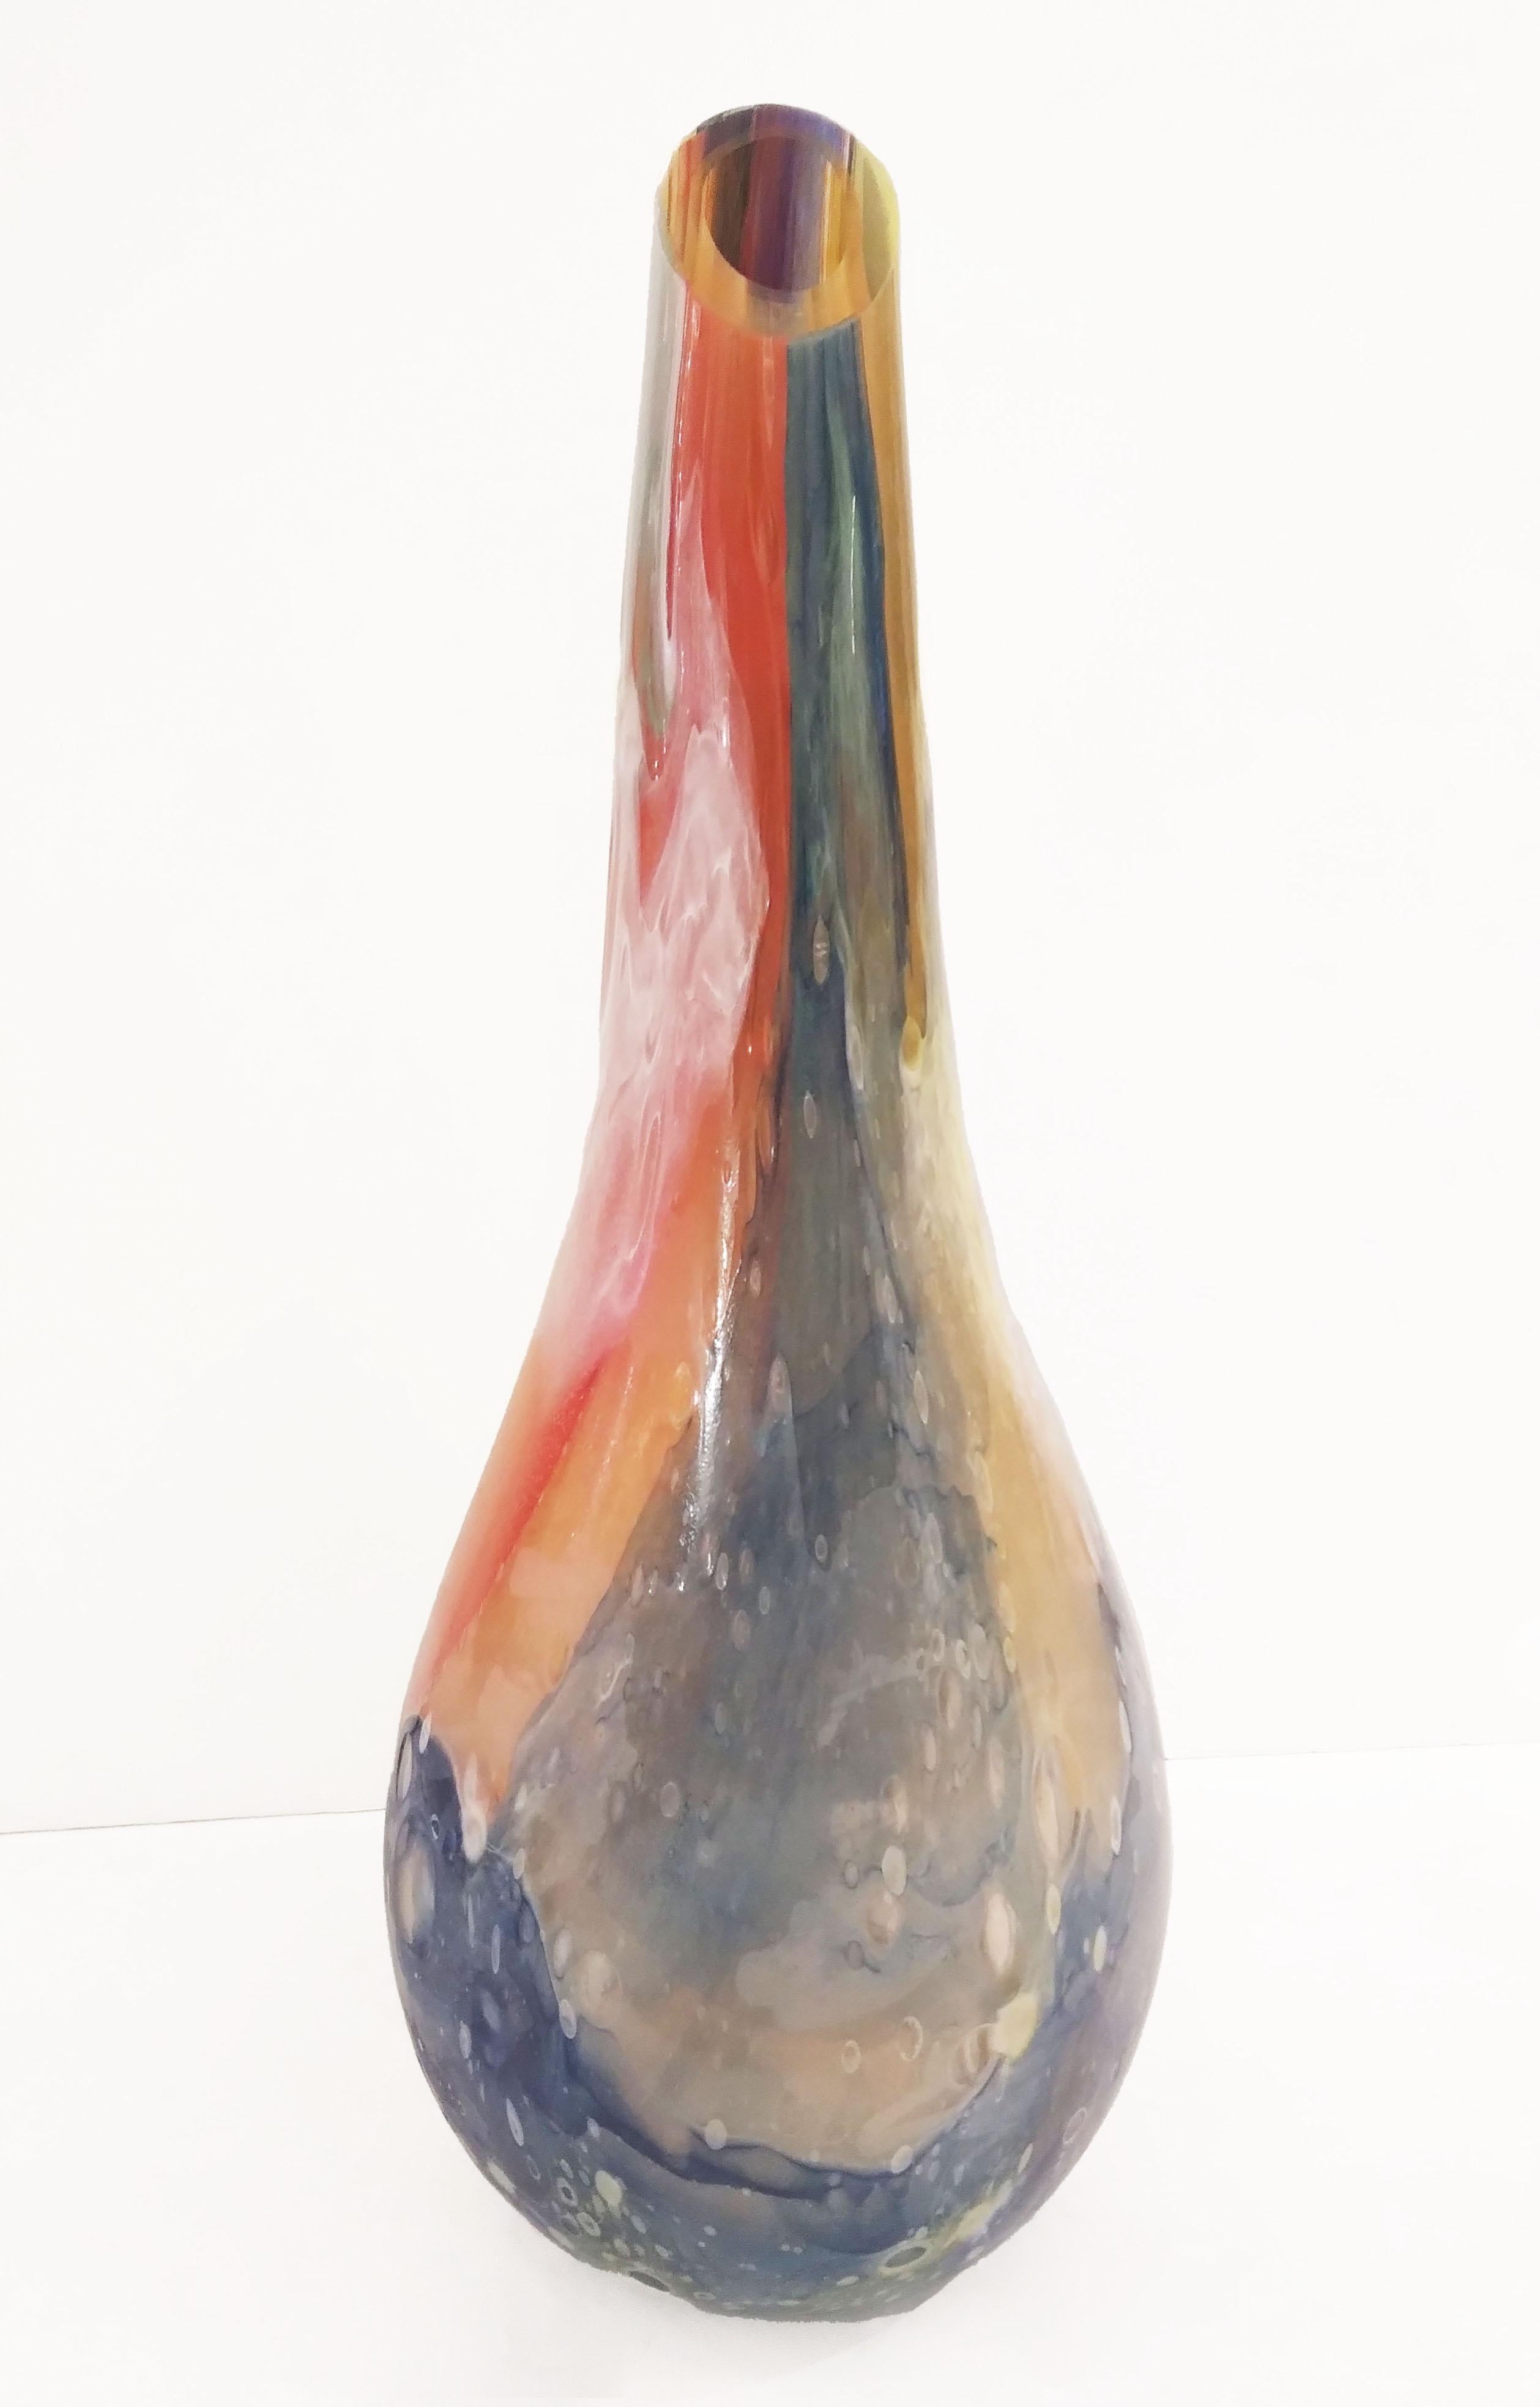 Venezianisches modernes dickes hochwertiges Muranoglas Blumenvase, aufwendig mit bunten überlappenden geblasenen Murrine gearbeitet, die mehrere Schichten von Glas, und die Arbeit in Bulicante: riesige Blasen in der Masse, schaffen eine fantastische